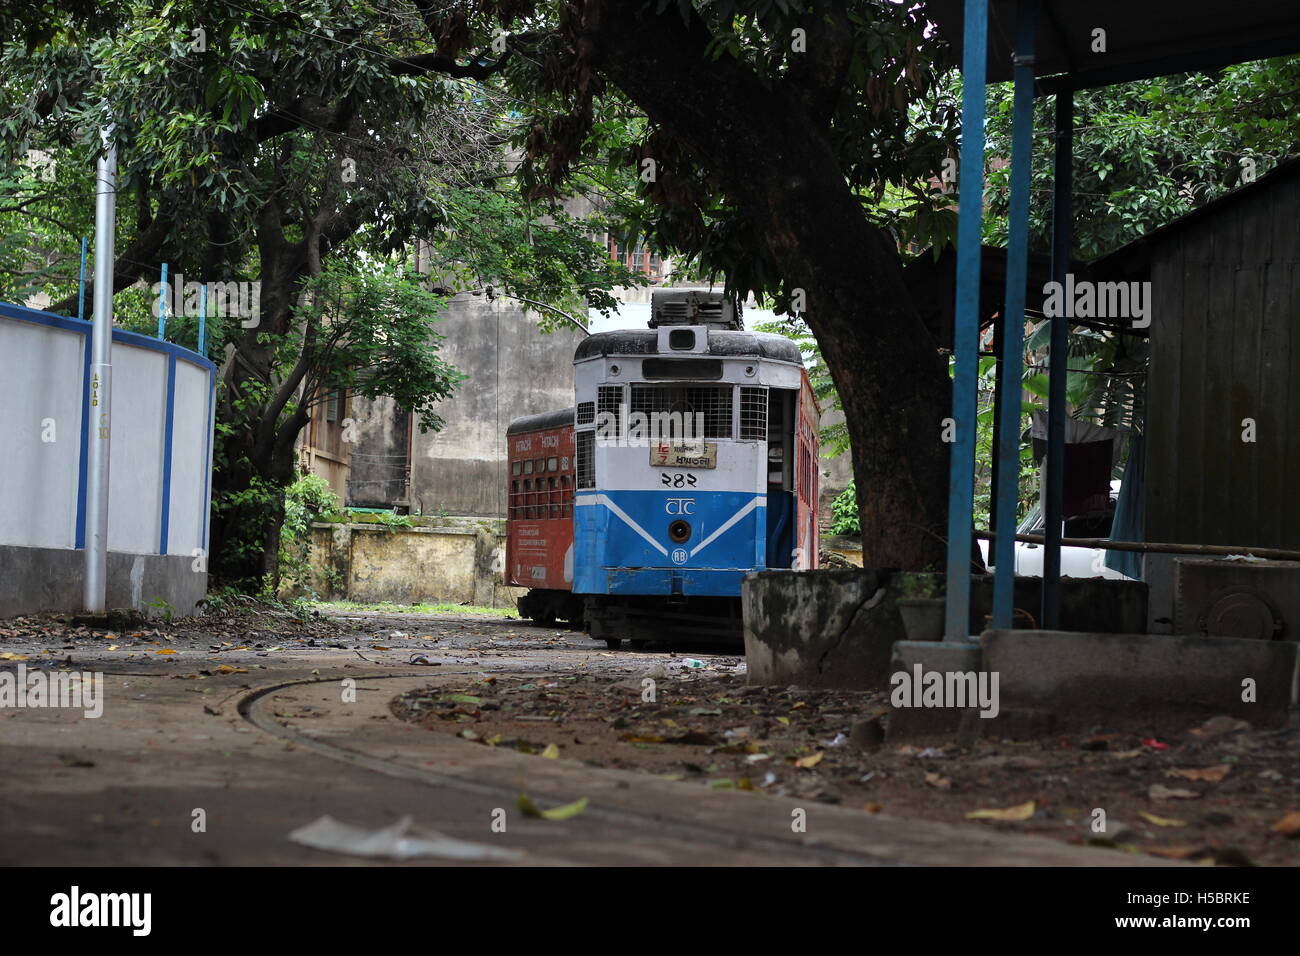 L'un des héritages les plus anciennes en Asie est le réseau de tramway de Kolkata, en marche depuis 1902. Le service de tramway à Kolkata ajoute aucune pollution. Banque D'Images